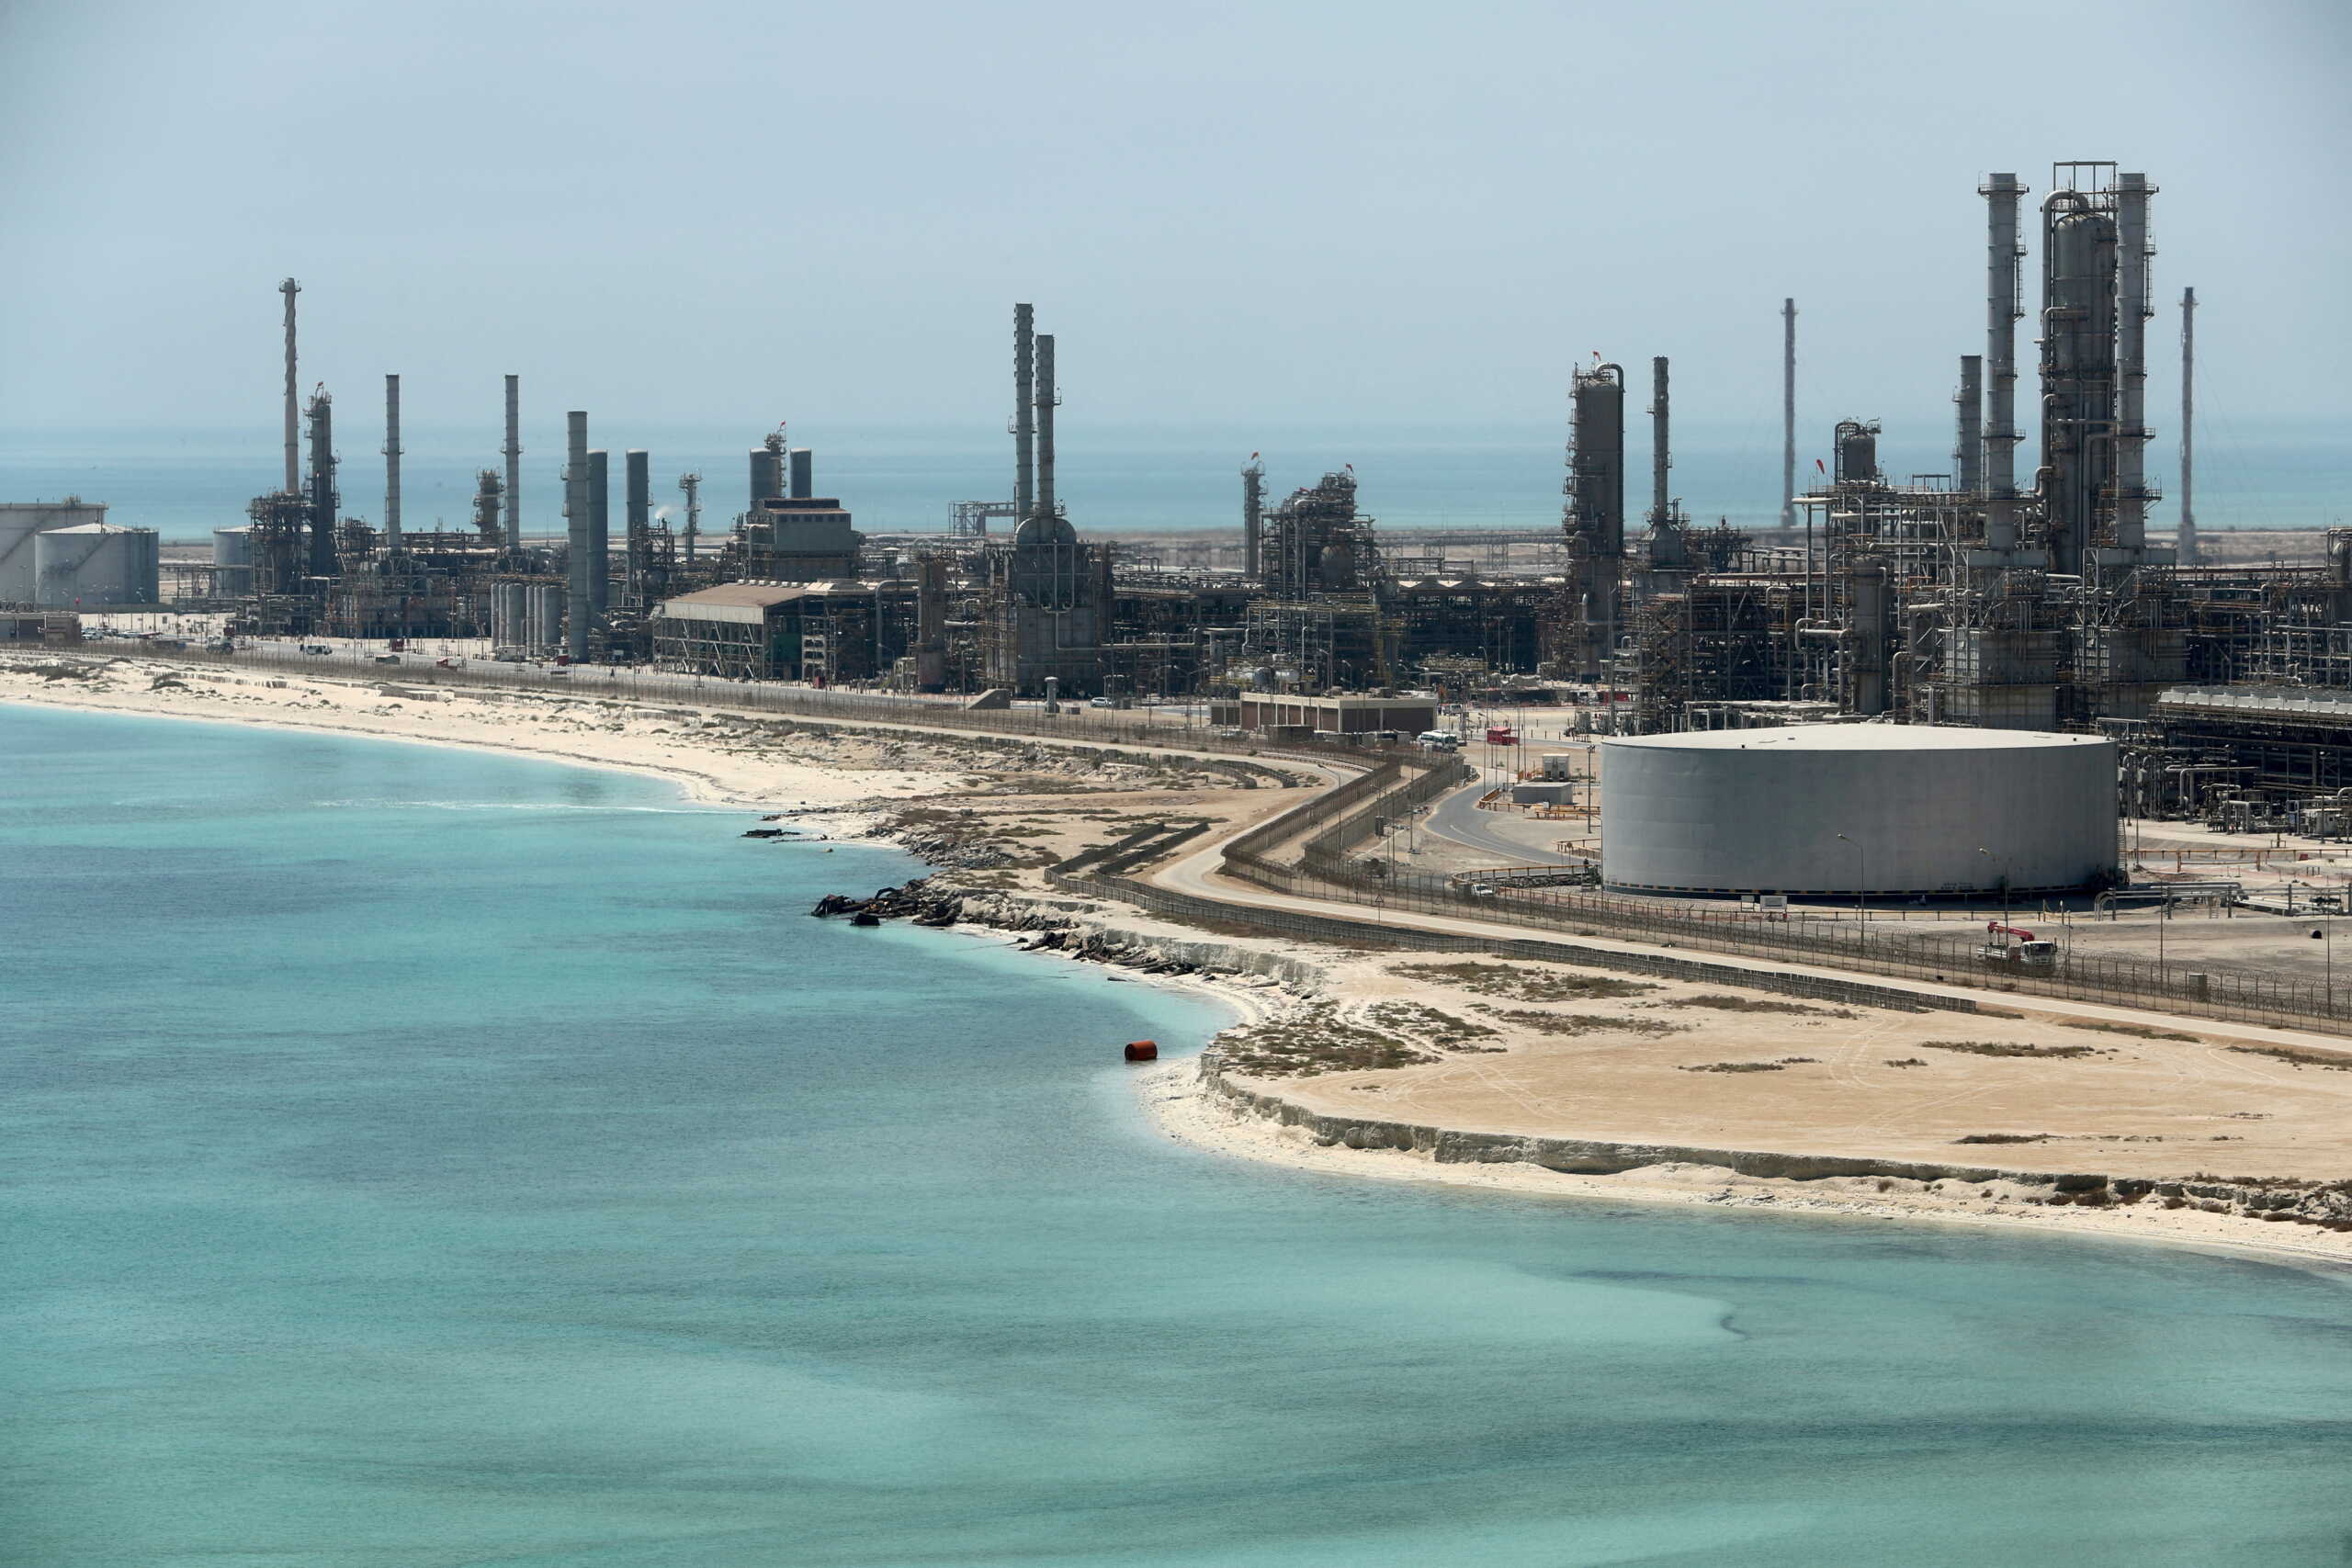 Η Σαουδική Αραβία θέλει να ξεπεράσει τα 13 εκατομμύρια βαρέλια πετρέλαιο μέχρι το 2027